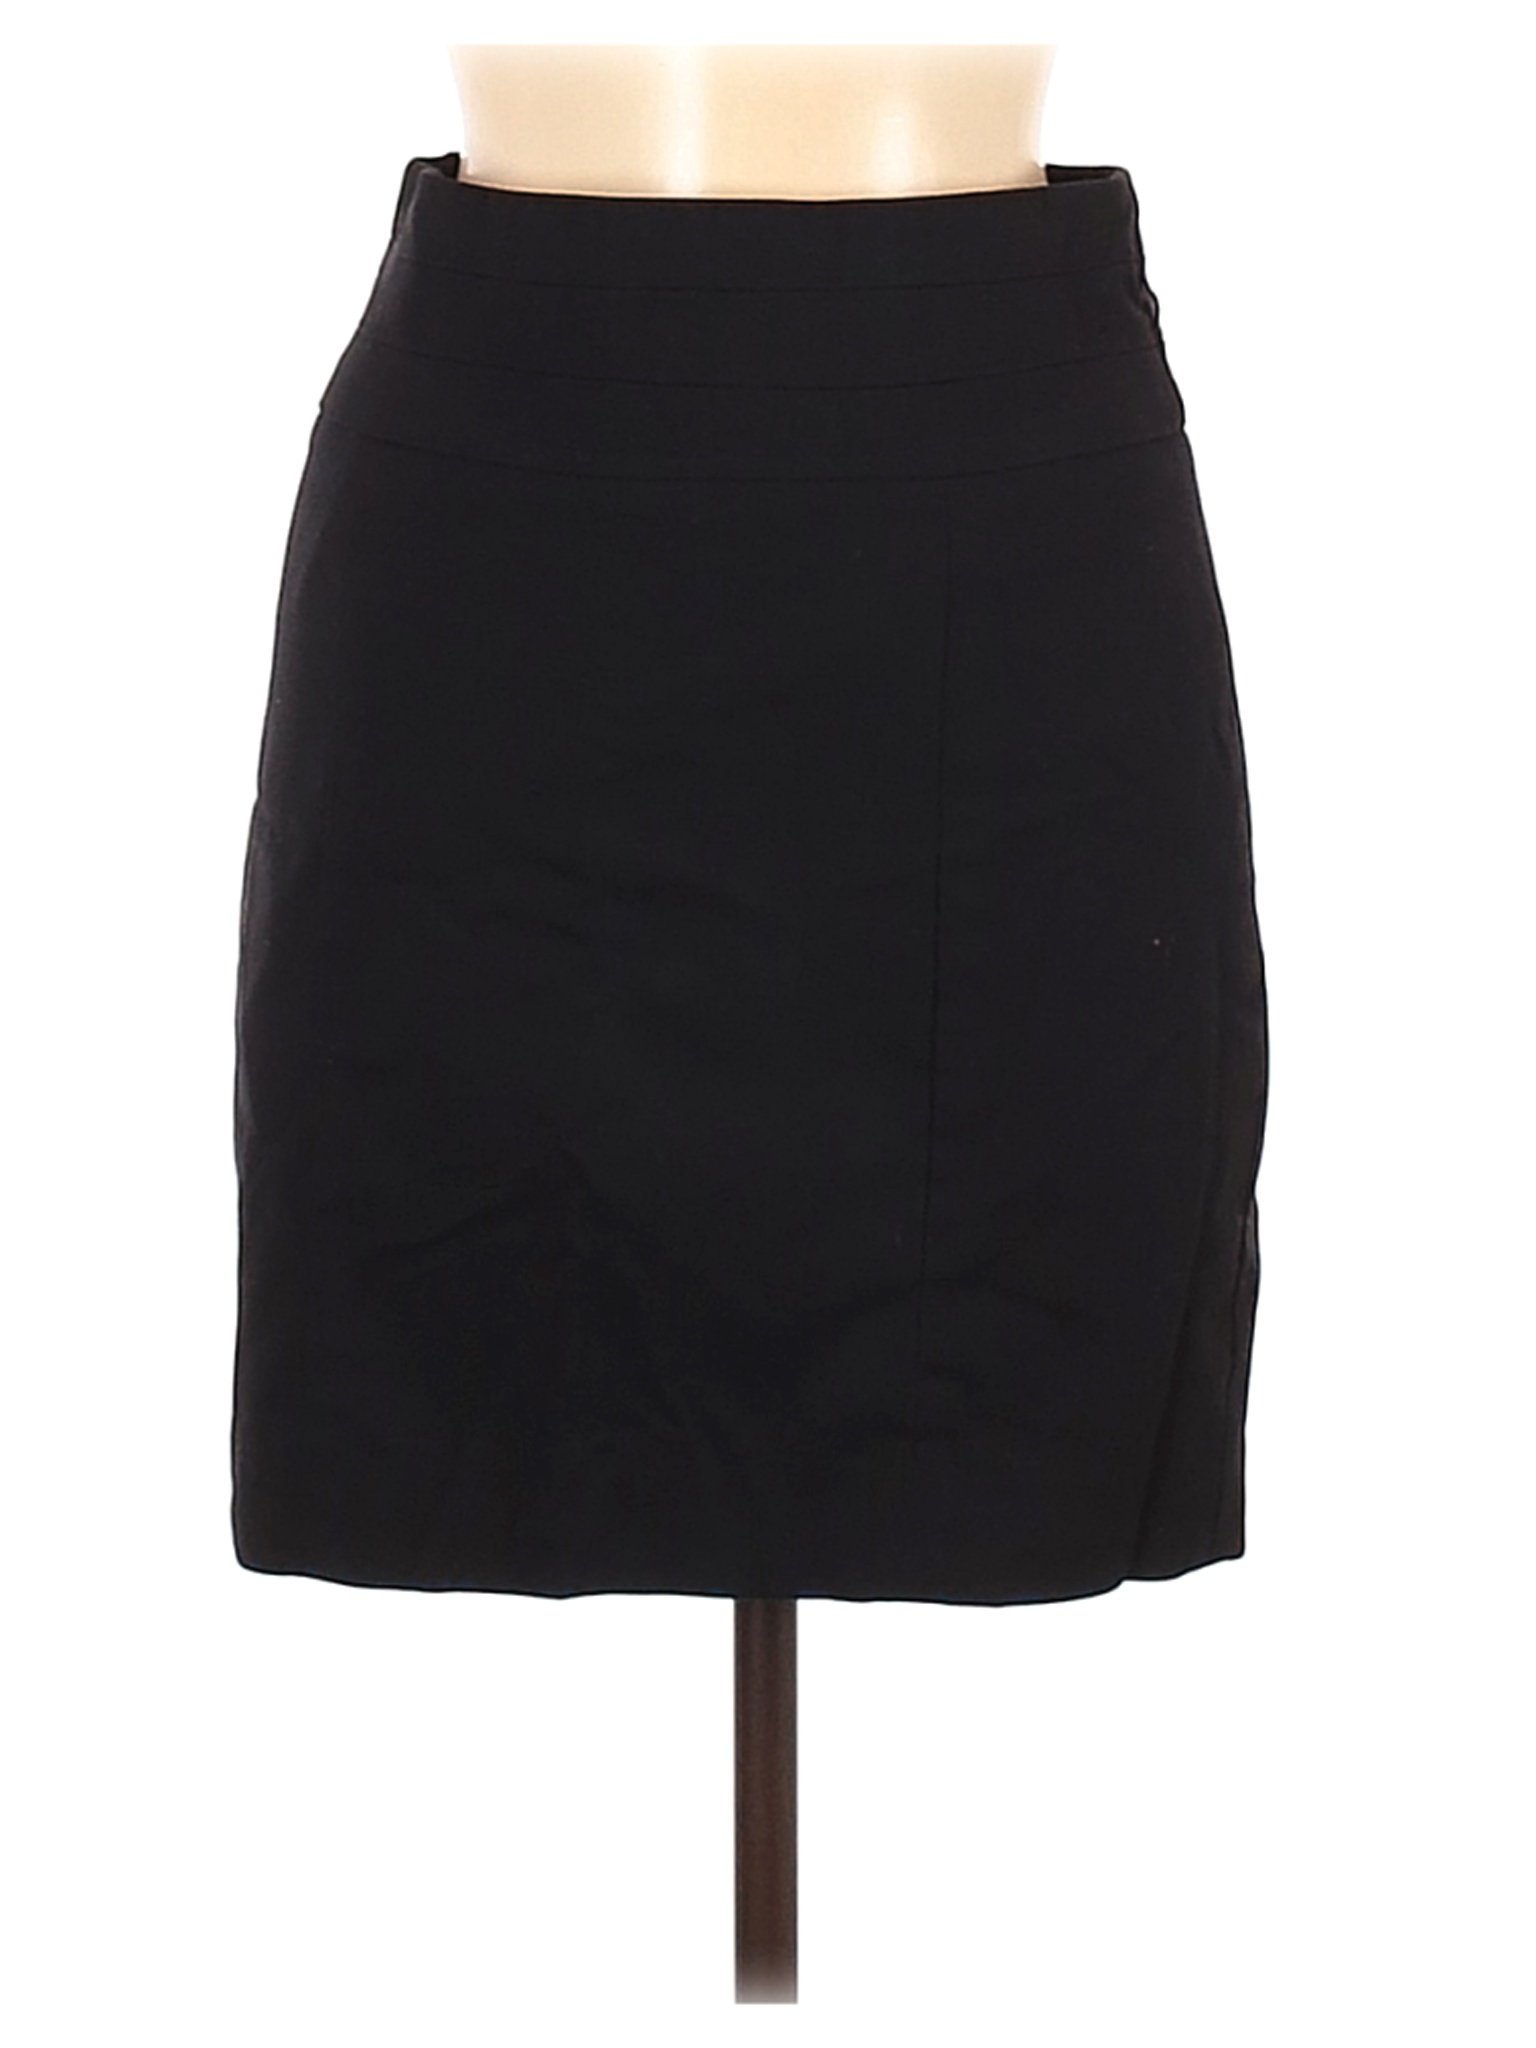 H&M Women Black Formal Skirt 6 | eBay